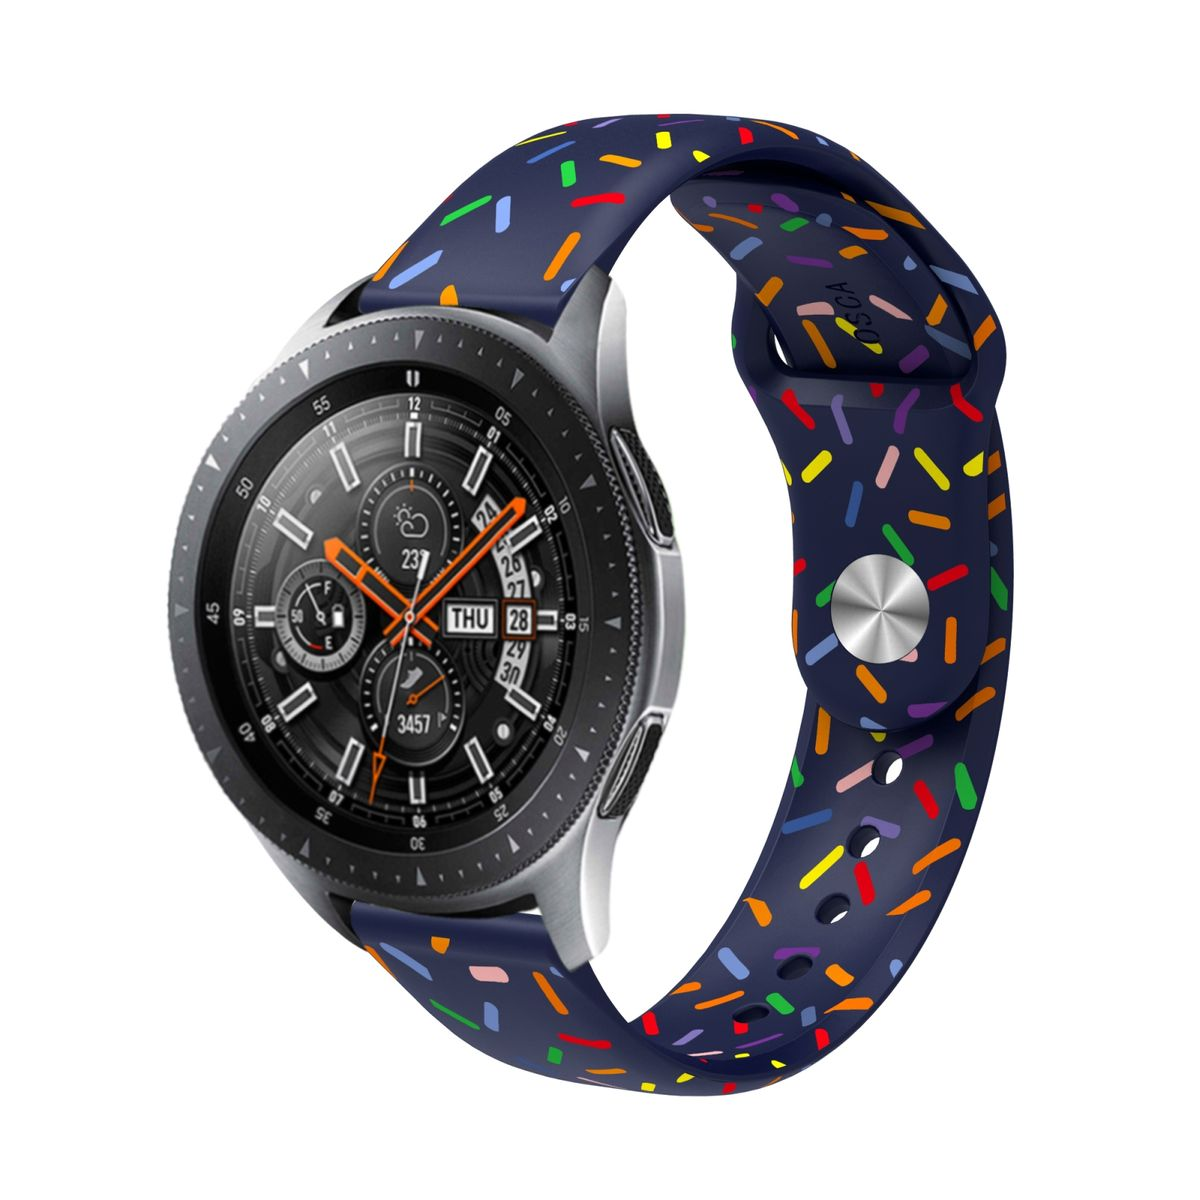 Design Watch Galaxy Classic mm 40 6 47 44 4 Watch Samsung, Verschluss, Sport mm, WIGENTO / 46 / 42 45mm / Watch praktischen Blau 5 Band mit 5 43 Pro 4 / 6 Ersatzarmband, / / mm Silikon